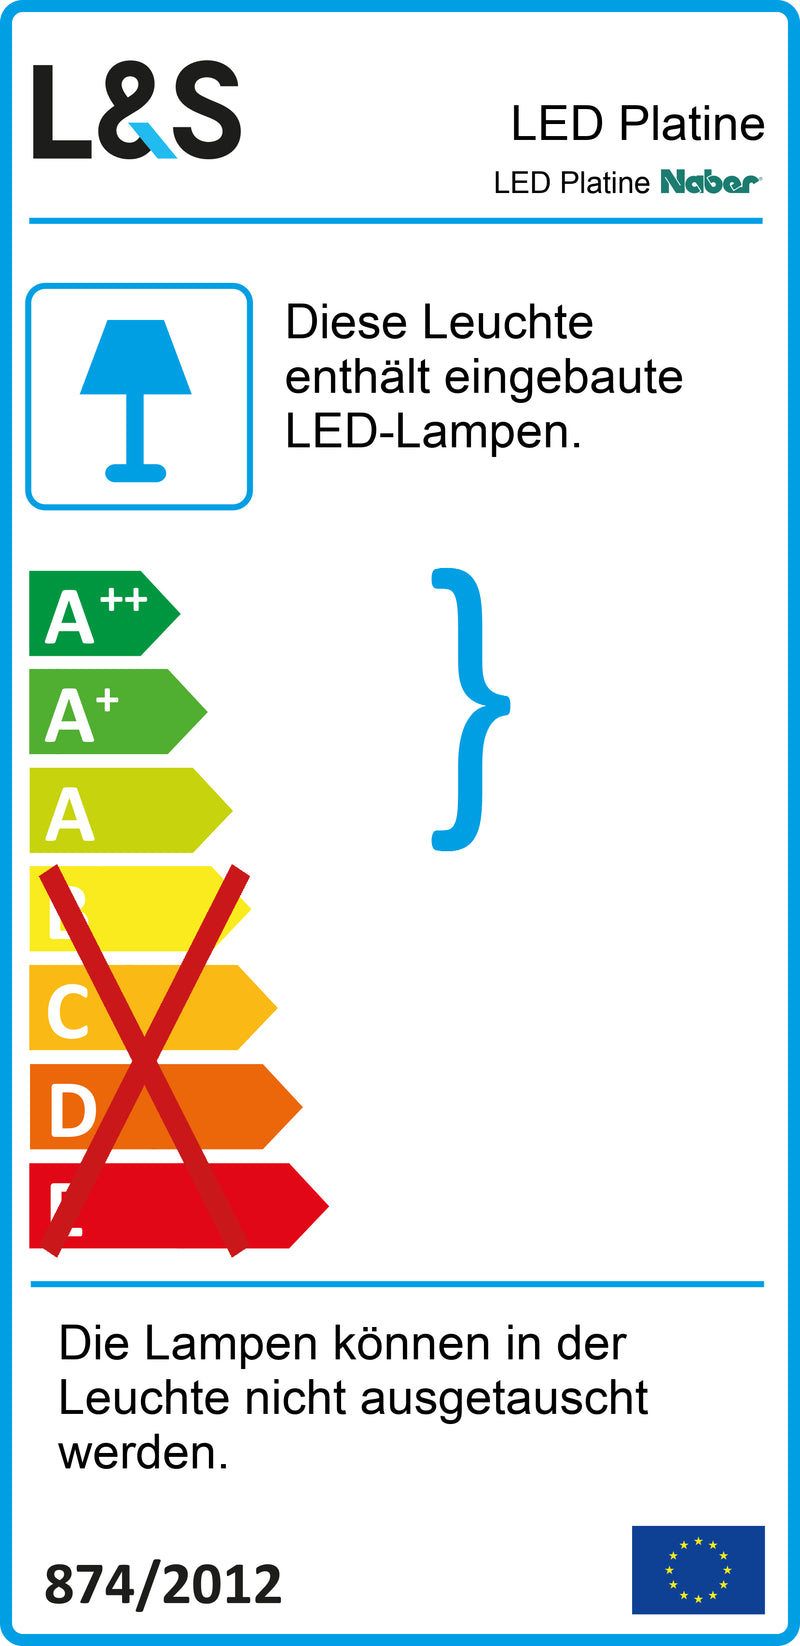 E-Label zu LED Platine als Variante 4000 K neutralweiß von Naber GmbH in der Kategorie Lichttechnik in Österreich auf conceptshop.at